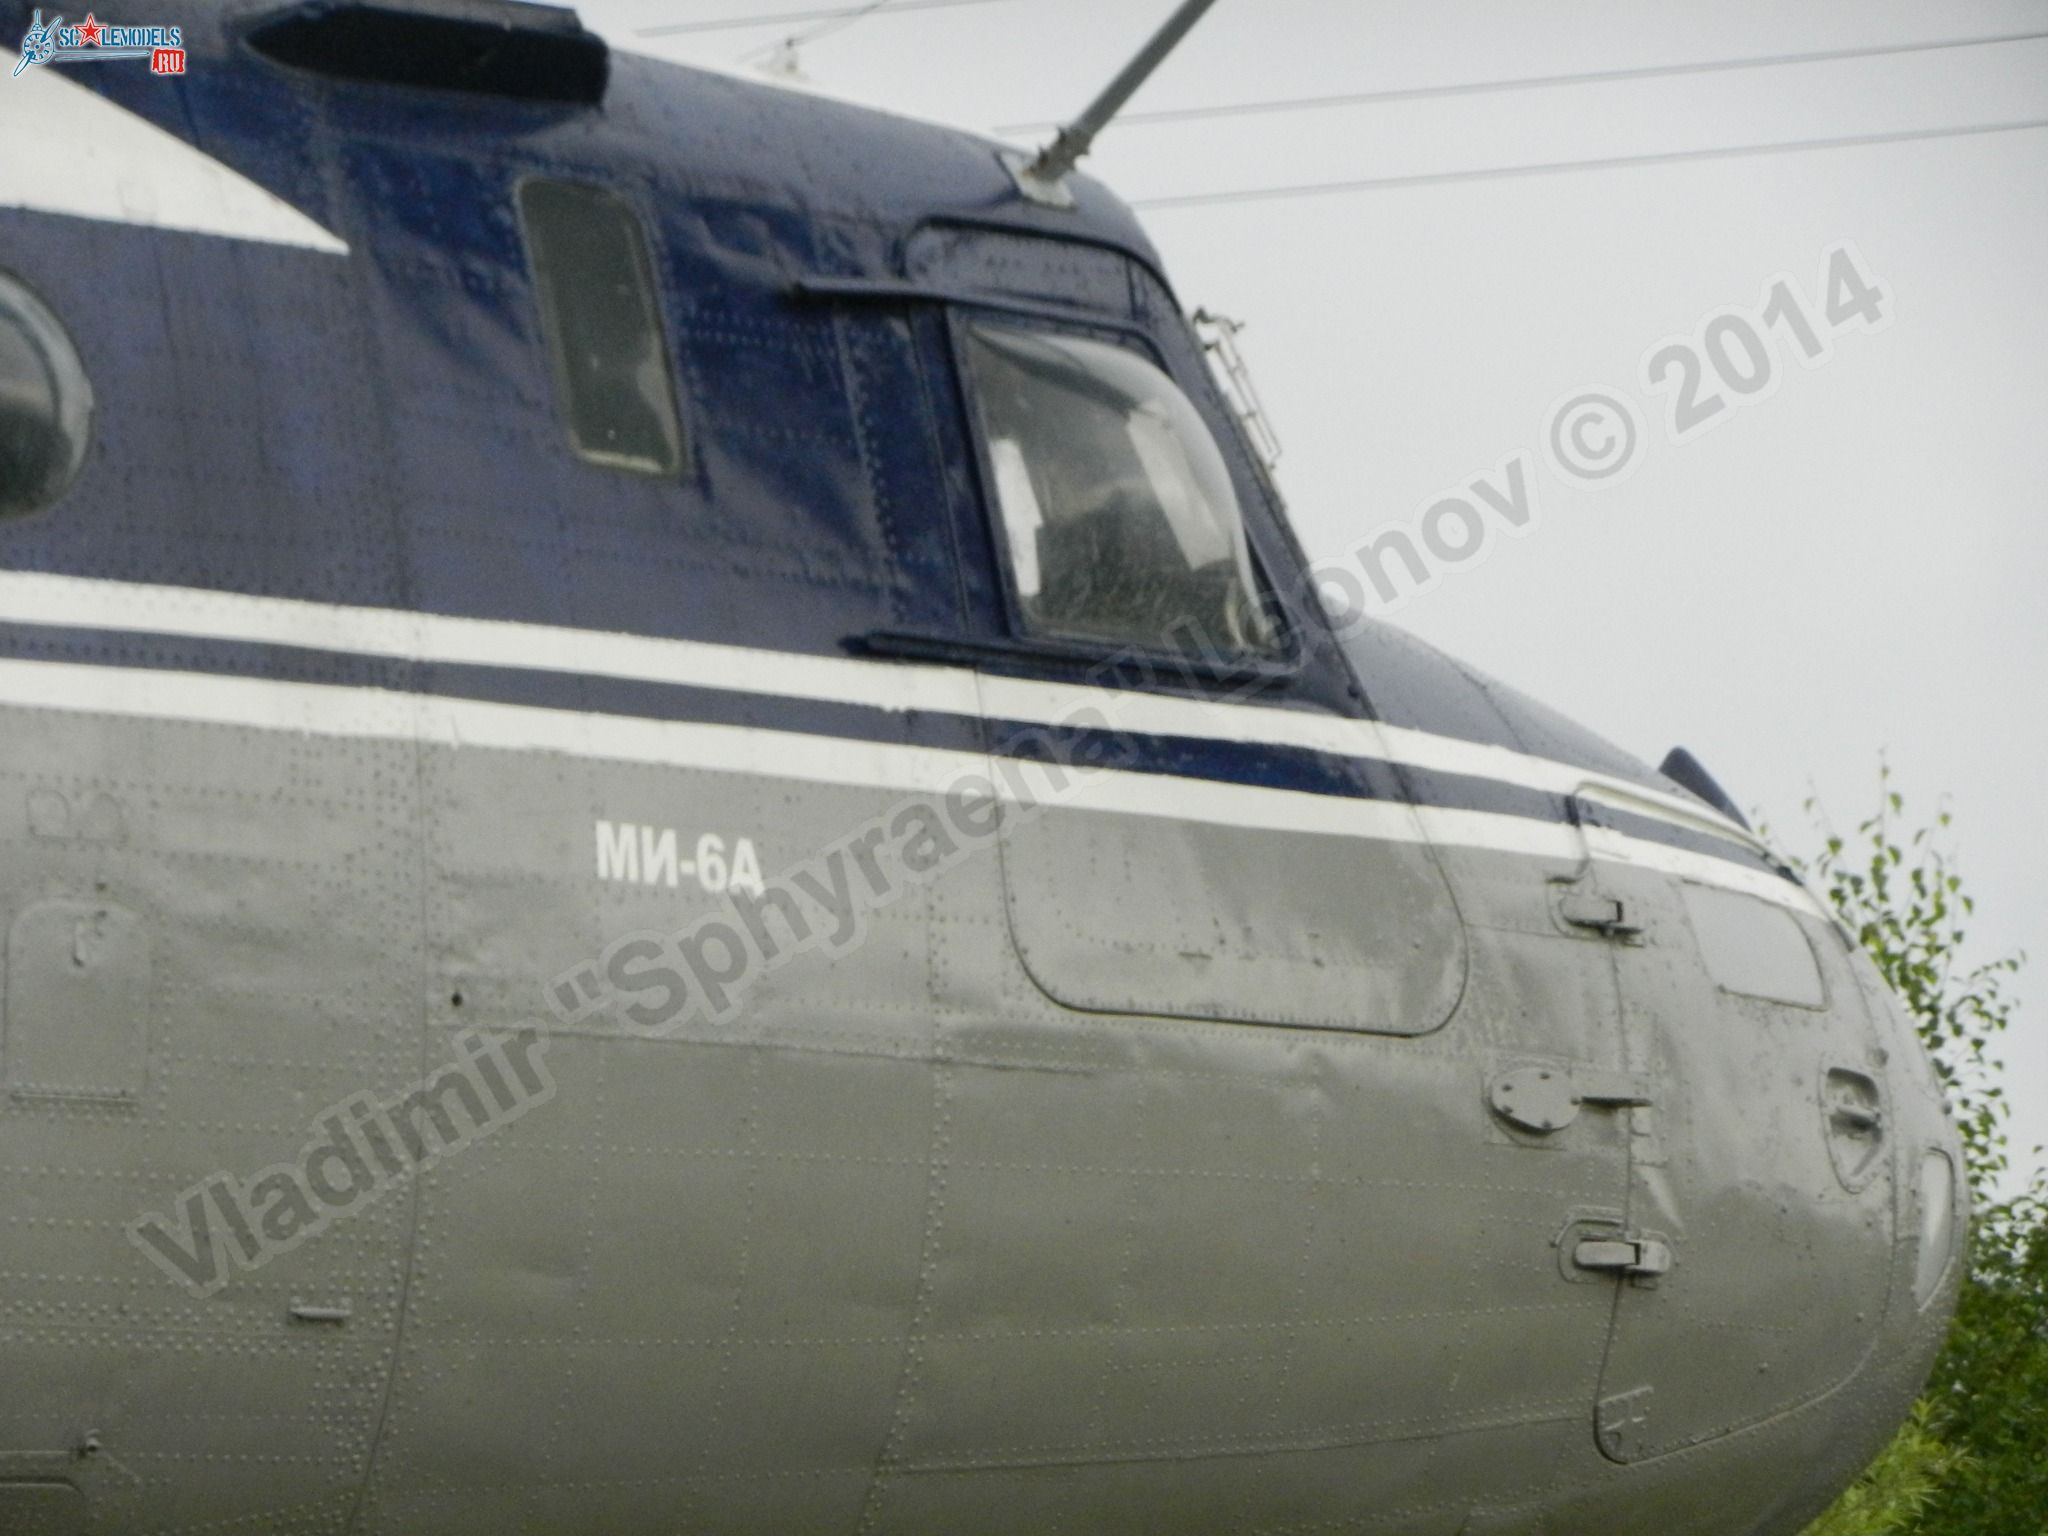 Mi-6_RA-21075_0018.jpg